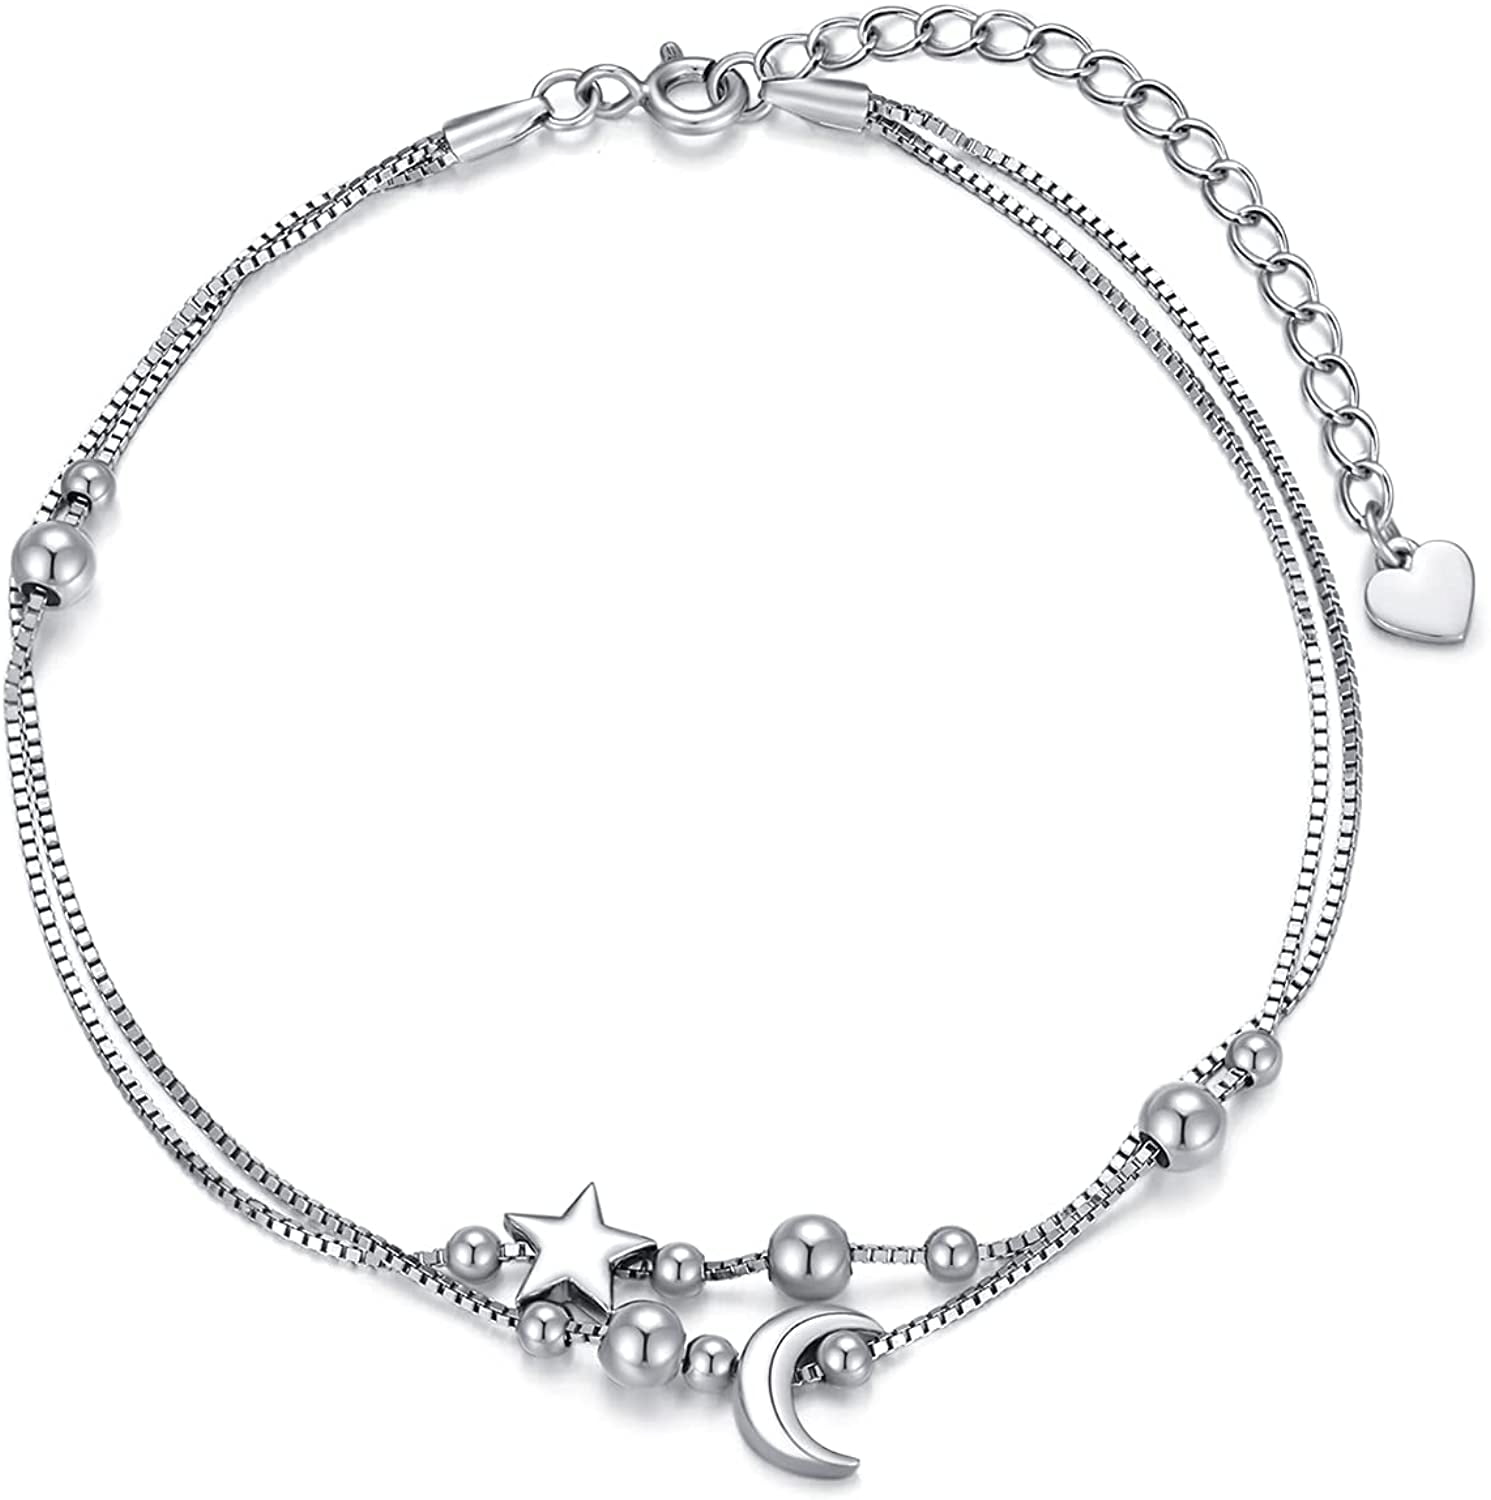 Women Ankle Bracelet 925 Sterling Silver Foot Chain Boho Beach Beads Jewelry 